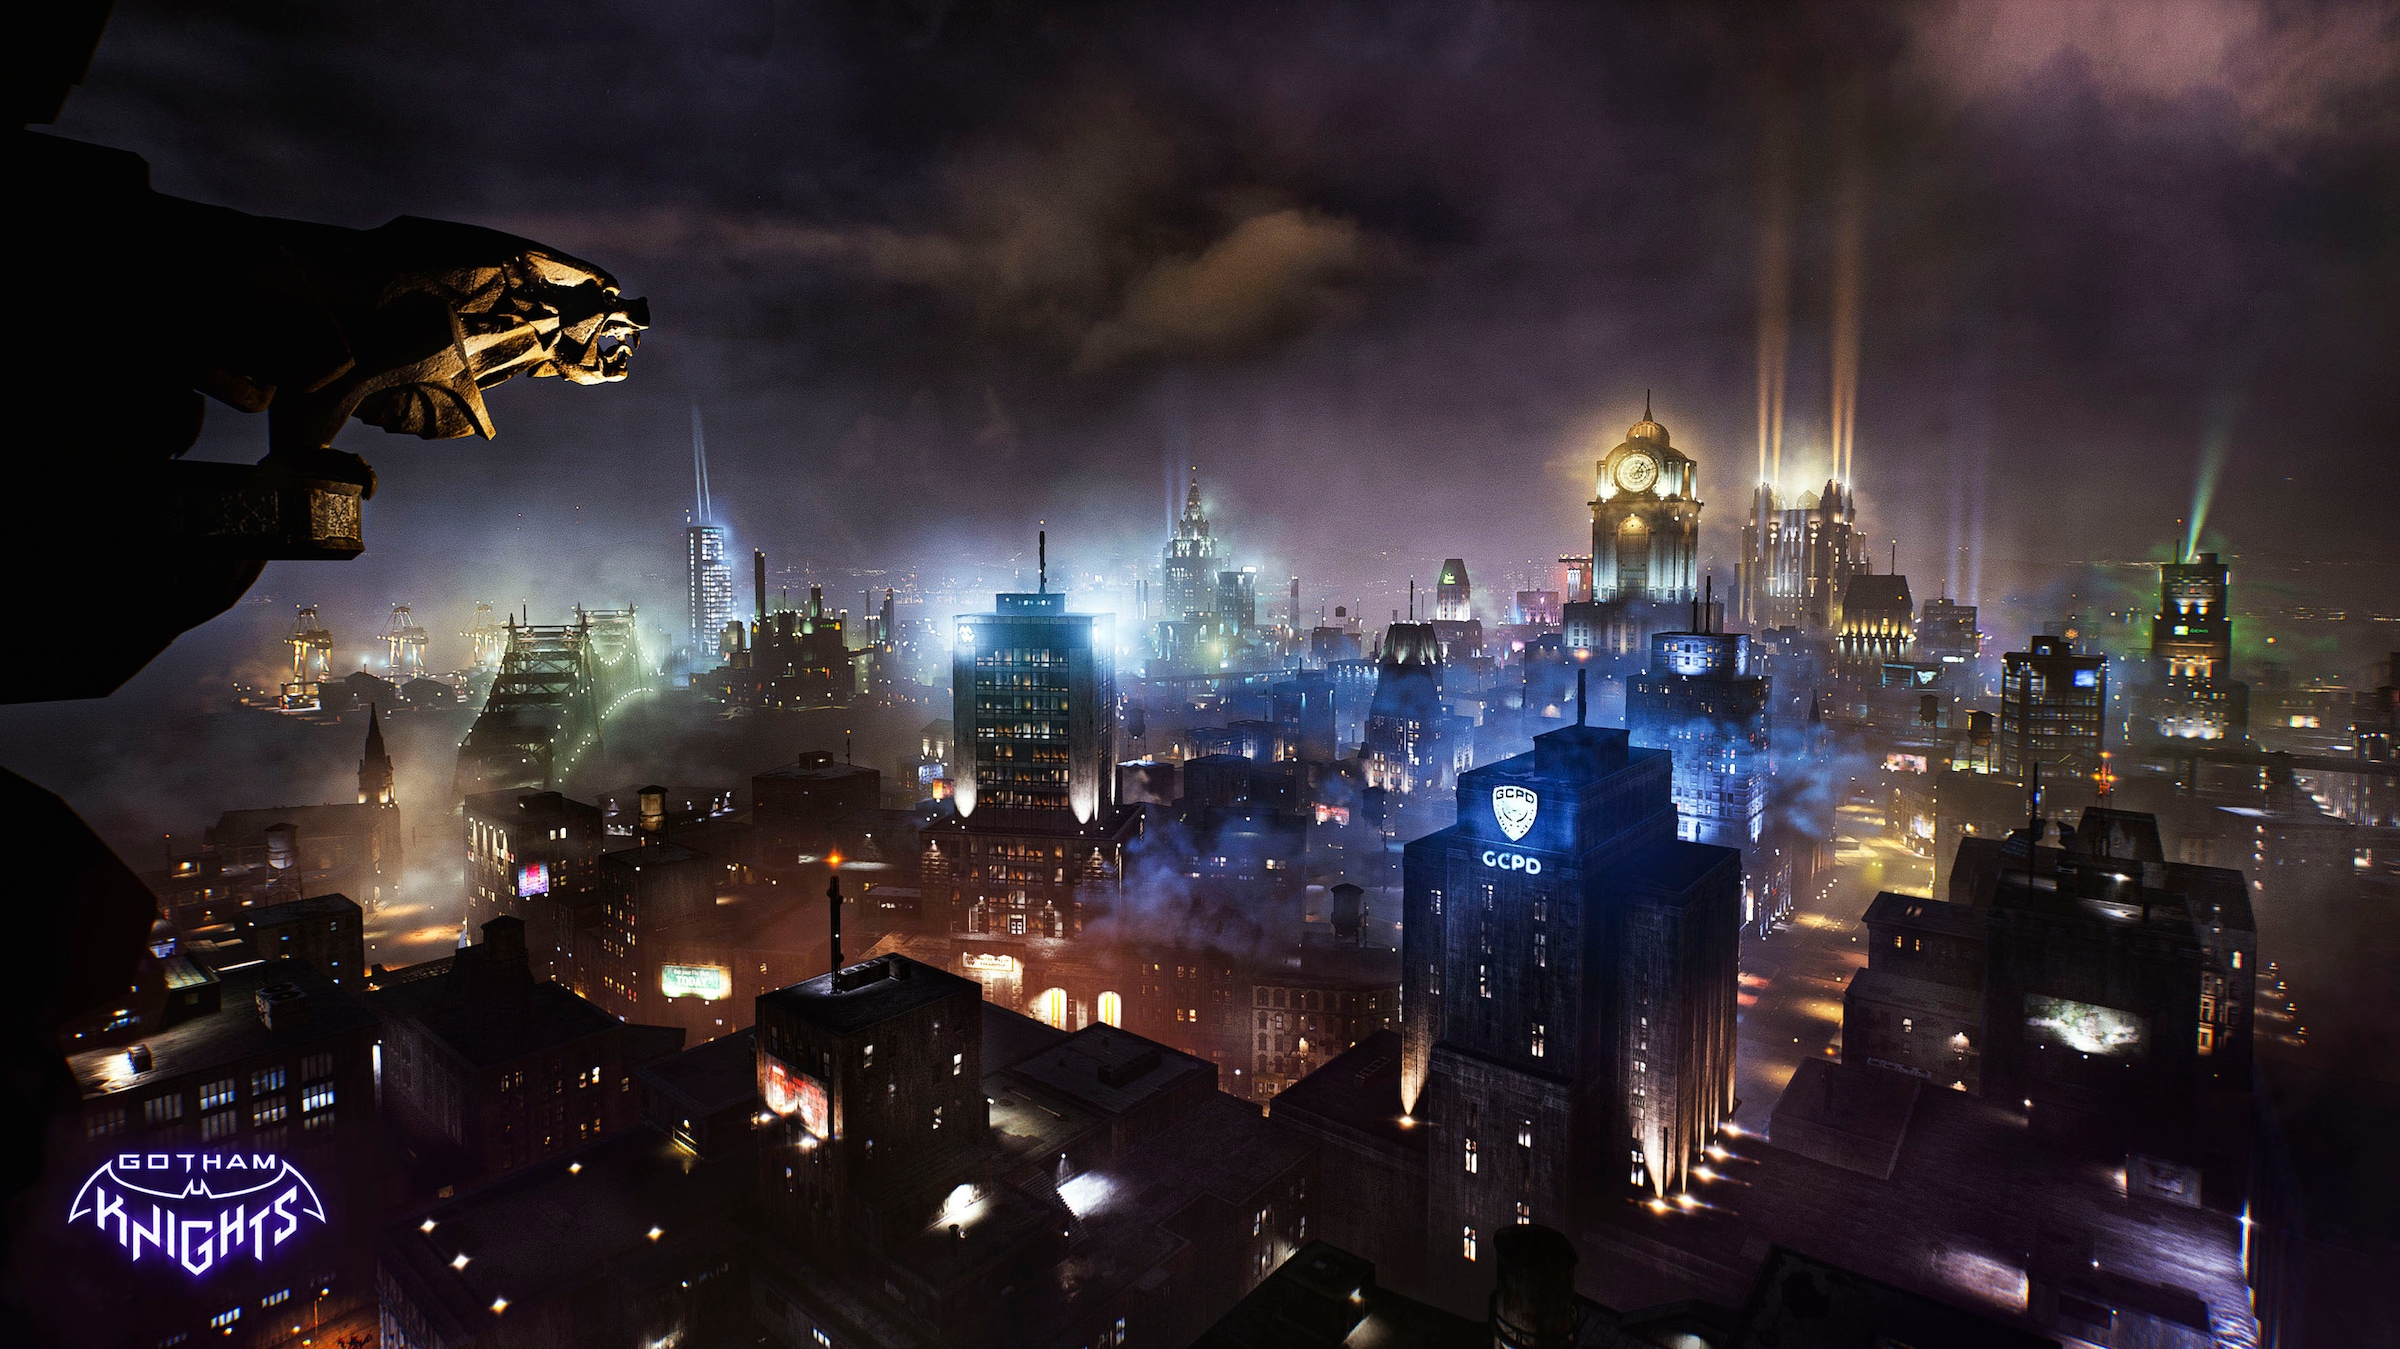 Warner Games Spielesoftware »Gotham Knights«, Xbox Series X